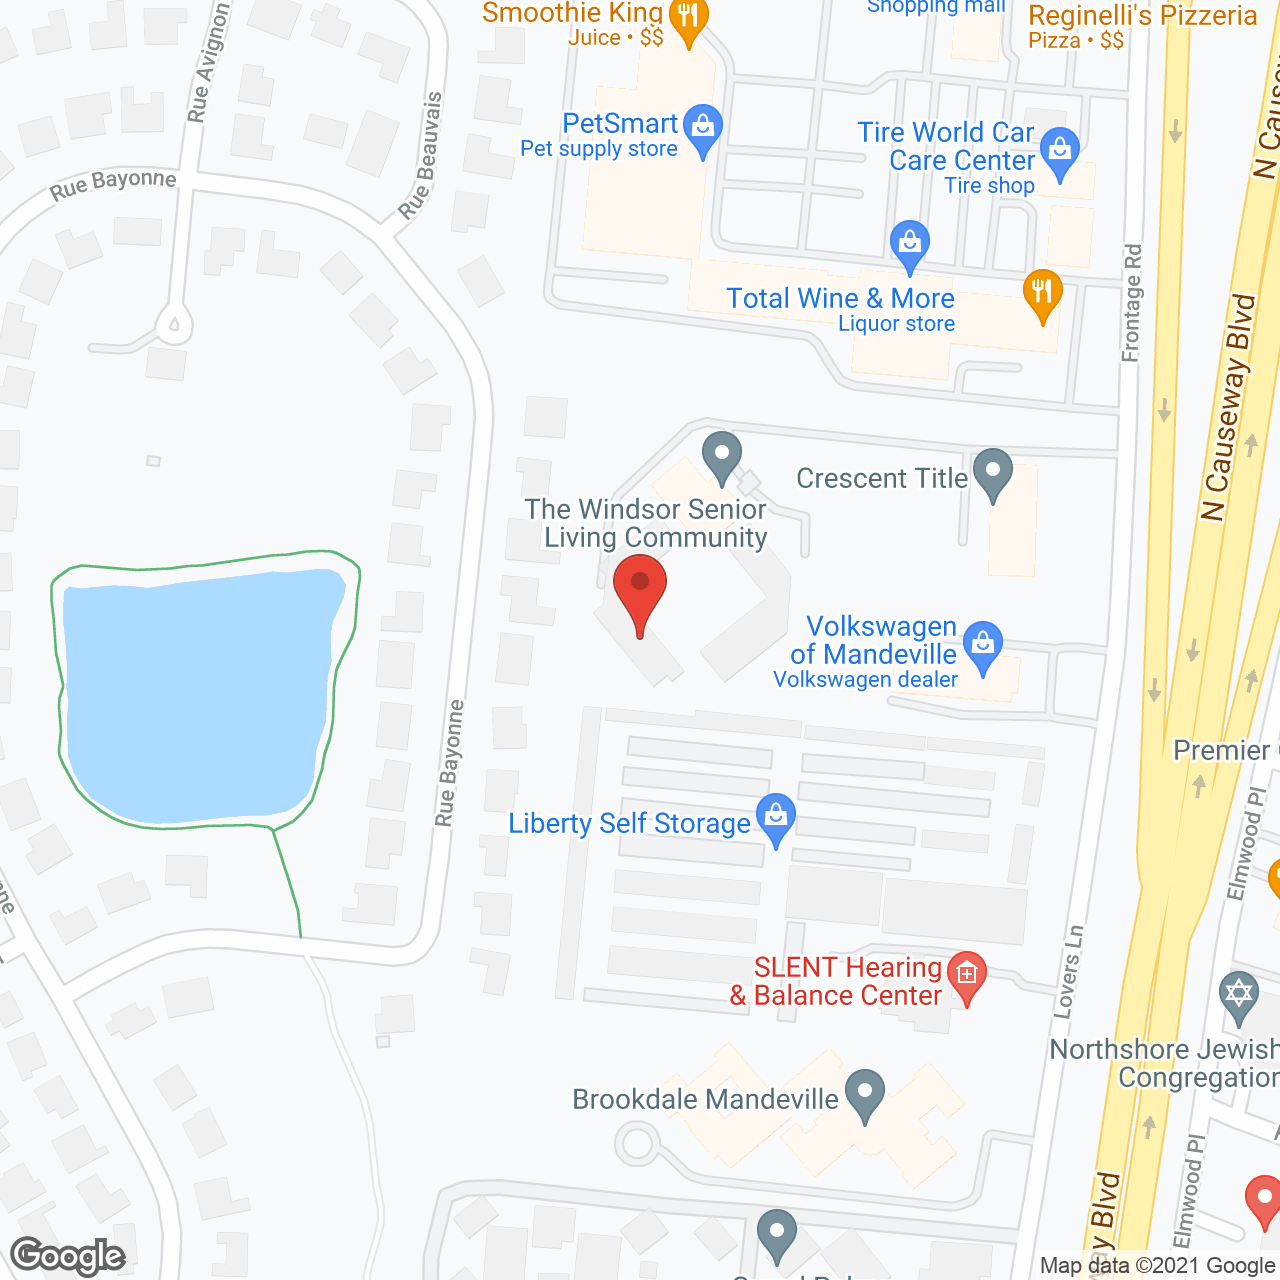 The Windsor Senior Living Community in google map